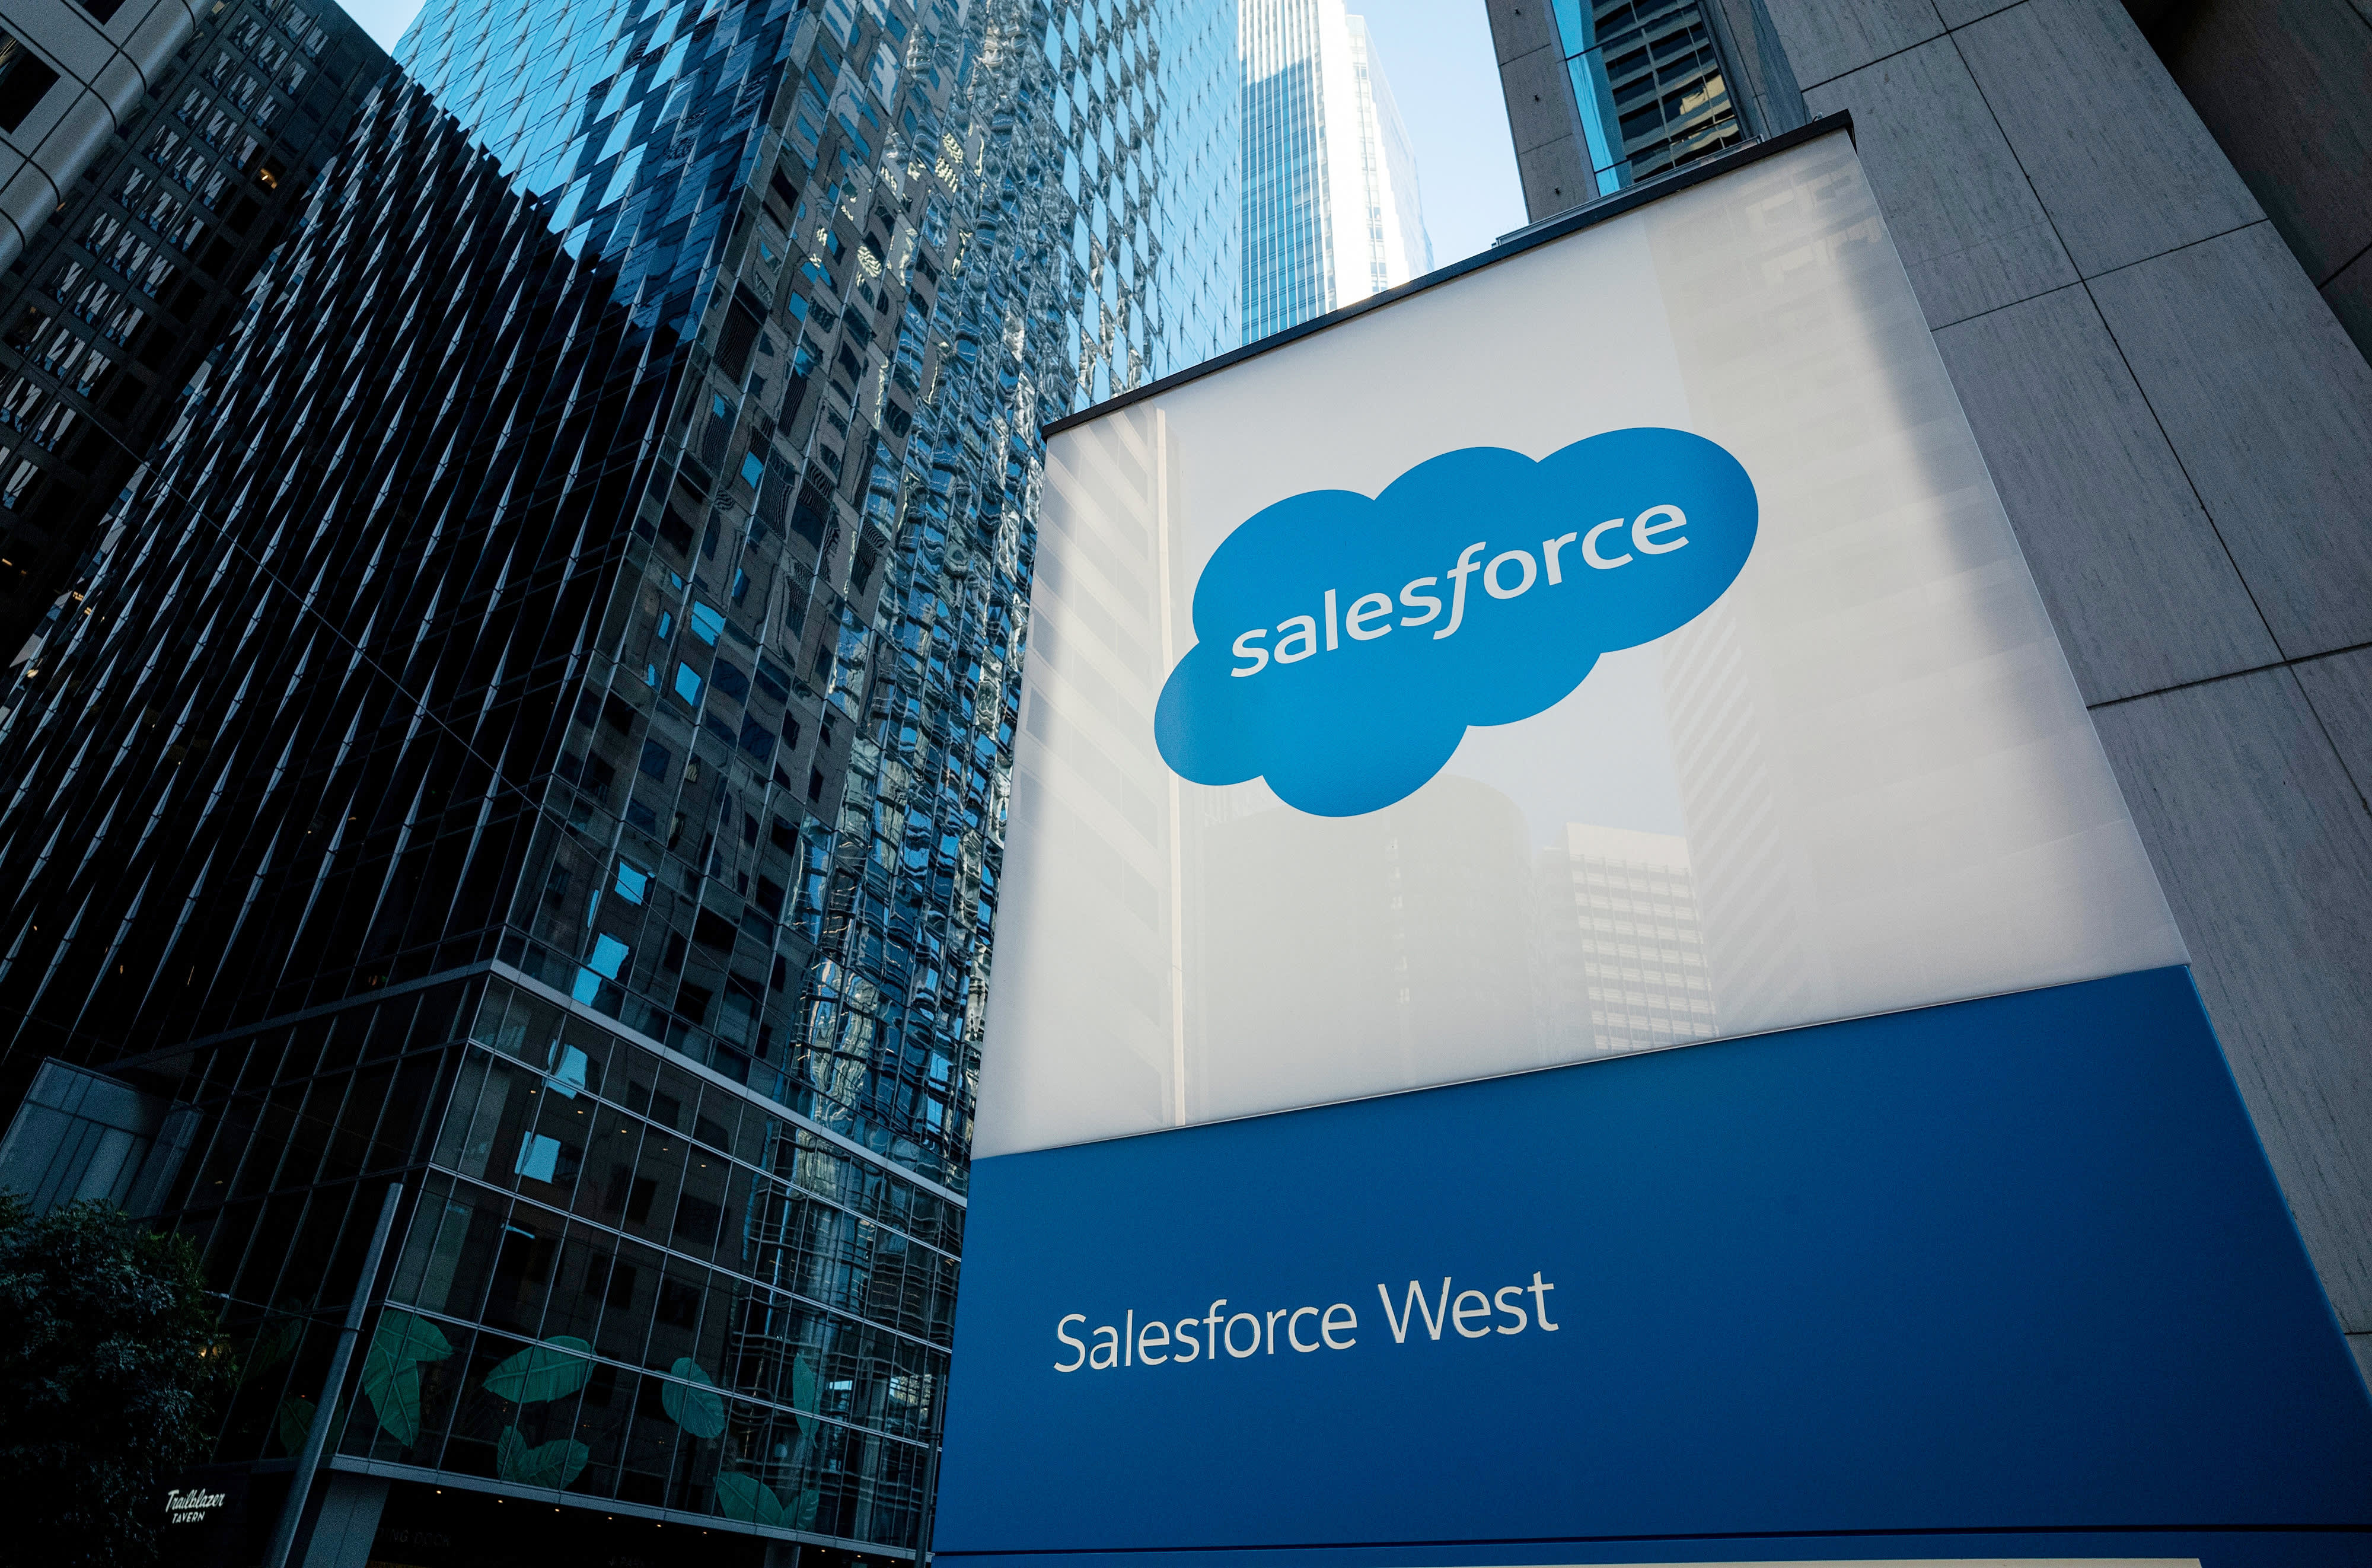 O plano de corte de custos da Salesforce é um passo muito necessário em uma crise econômica